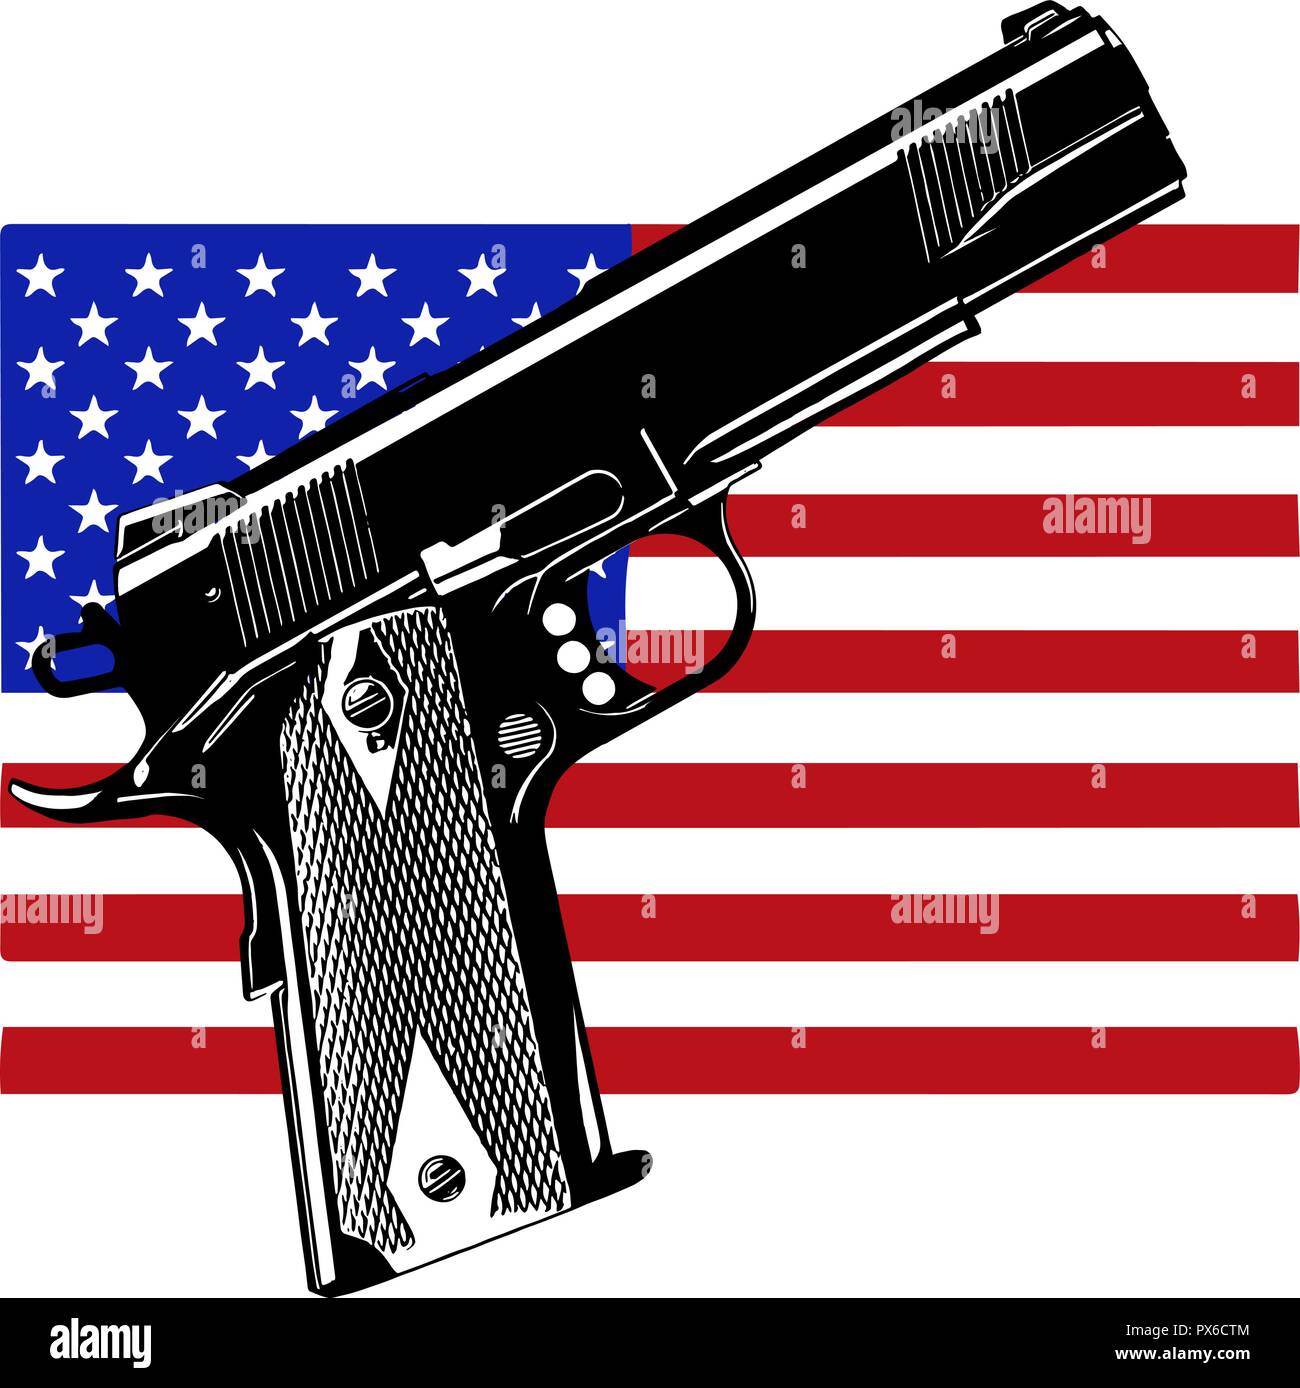 Gewehr auf USA-Flagge - Fokus auf Gewehr - Waffen Problem in den USA Stock Vektor